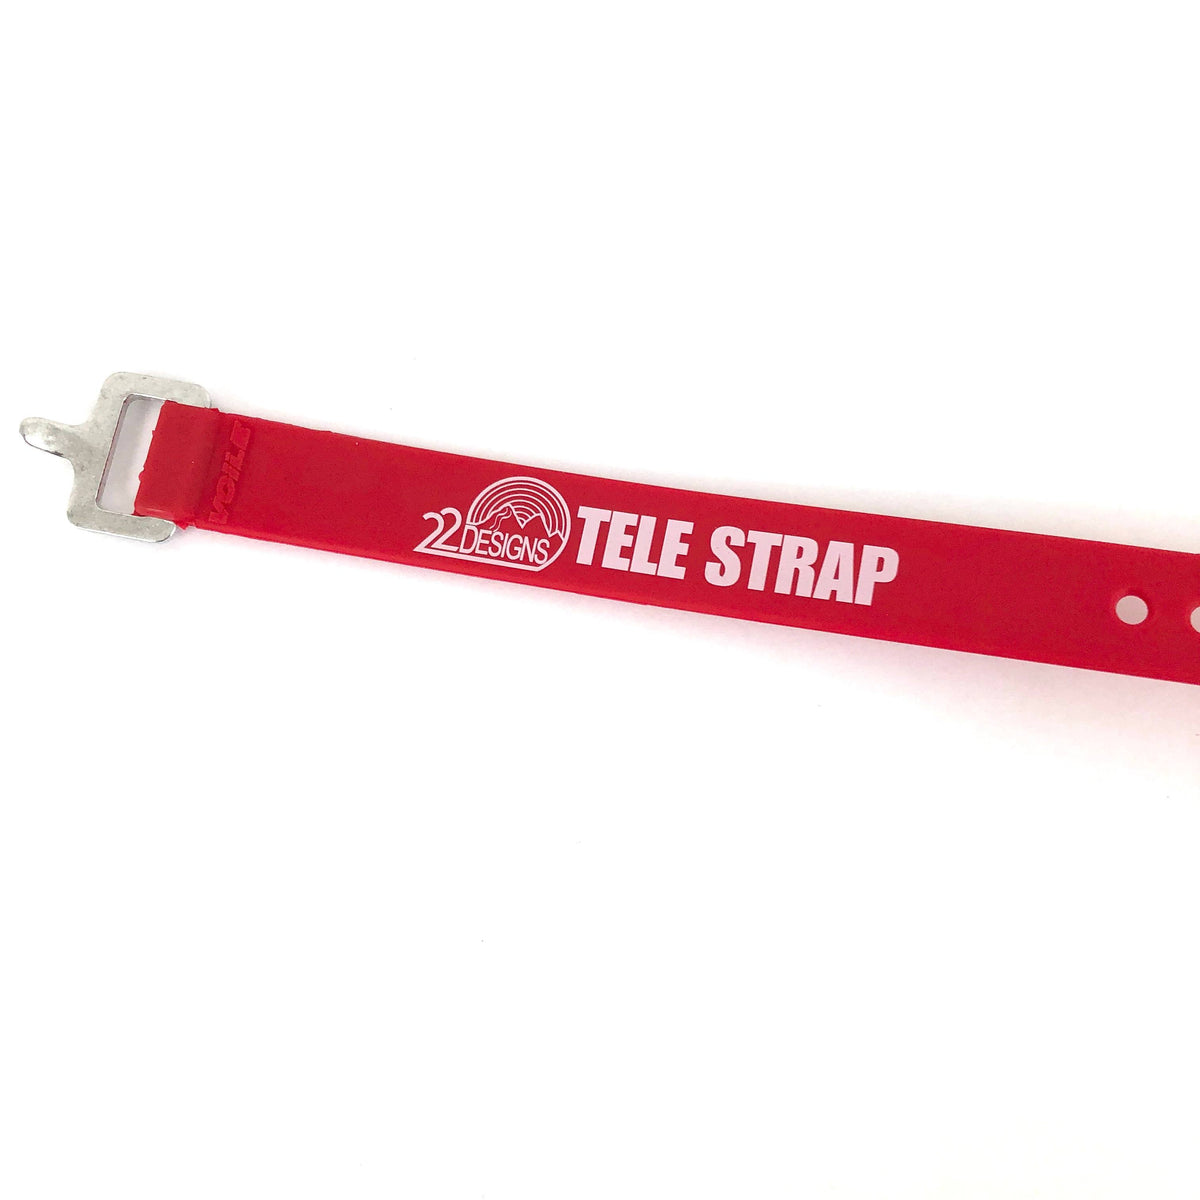 Tele Strap (20" Voile Strap)